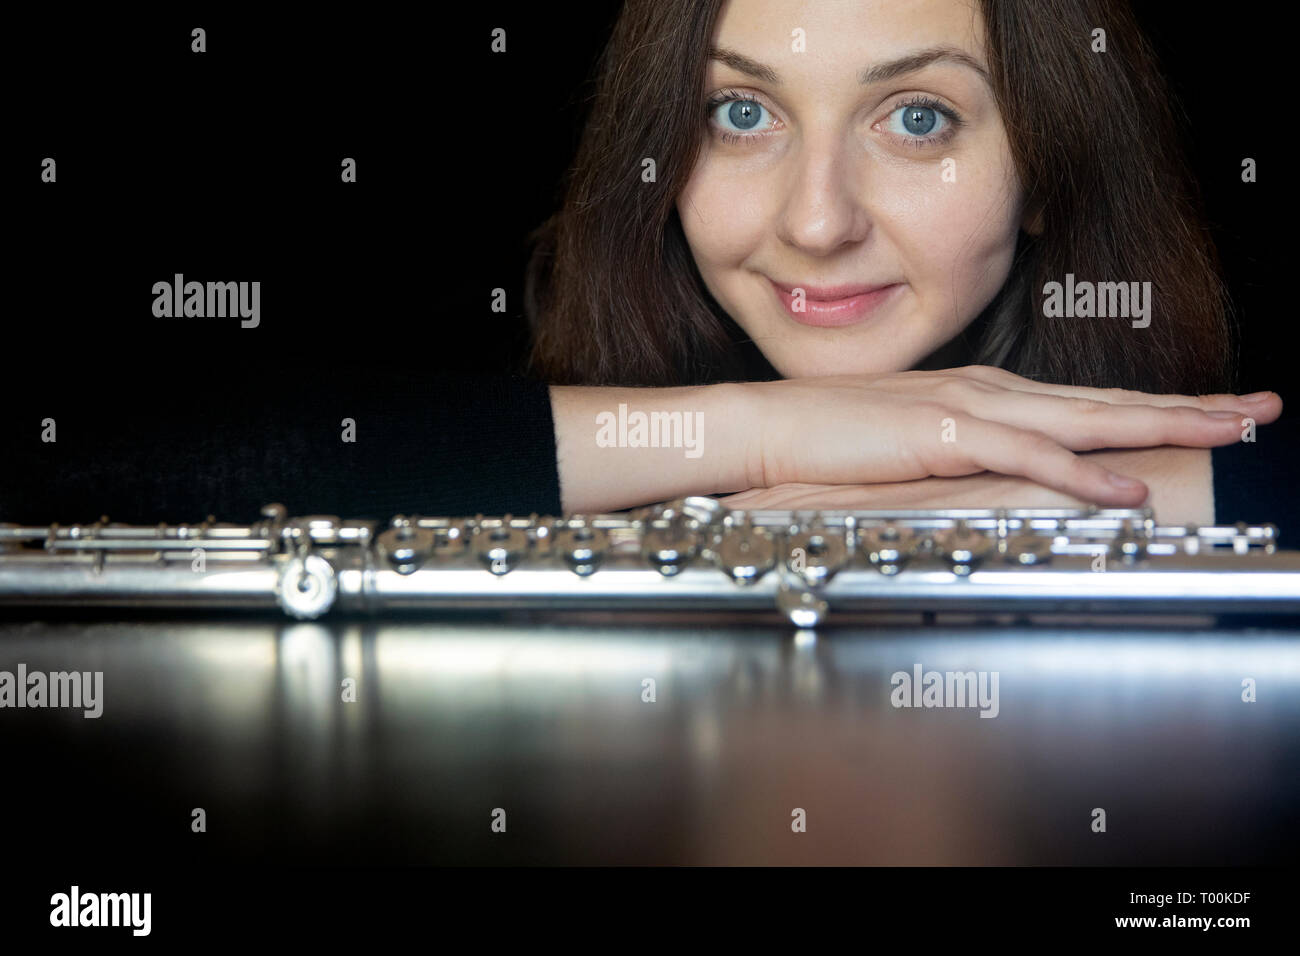 Ritratto in studio professionale di flautista [Alla Sorokoletova] - Boca Raton, Florida, Stati Uniti d'America Foto Stock